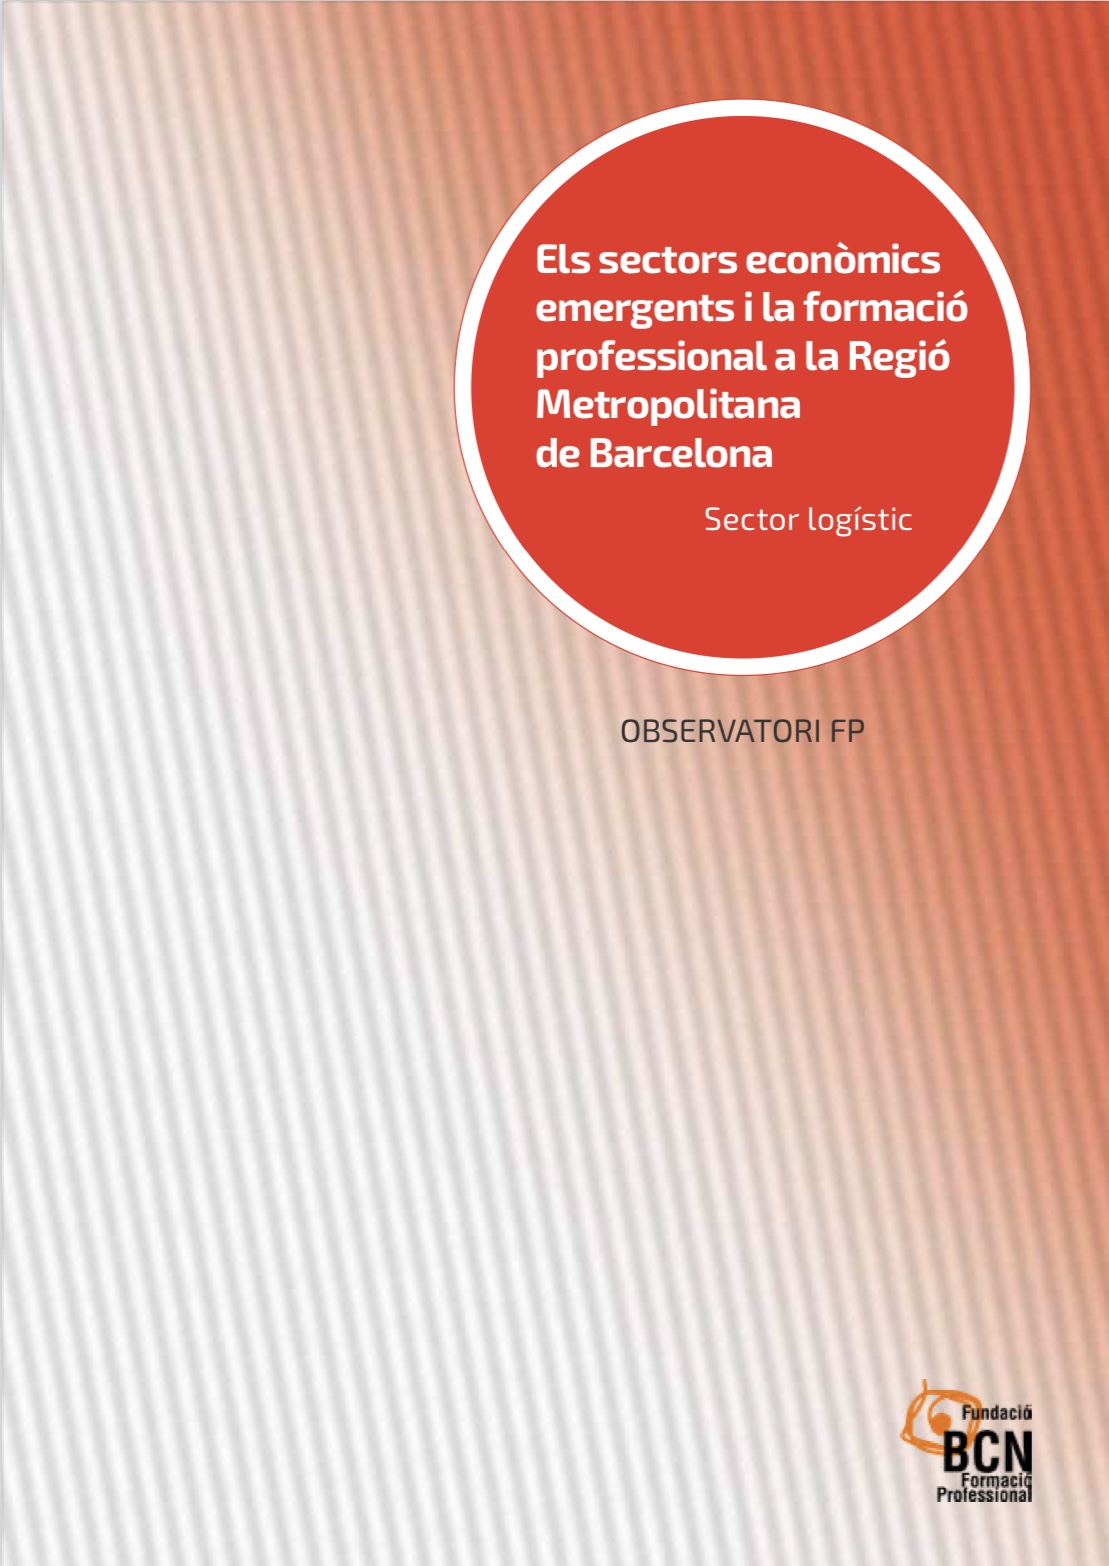 Economic sectors and VET in the AMB. Sector: Logistics